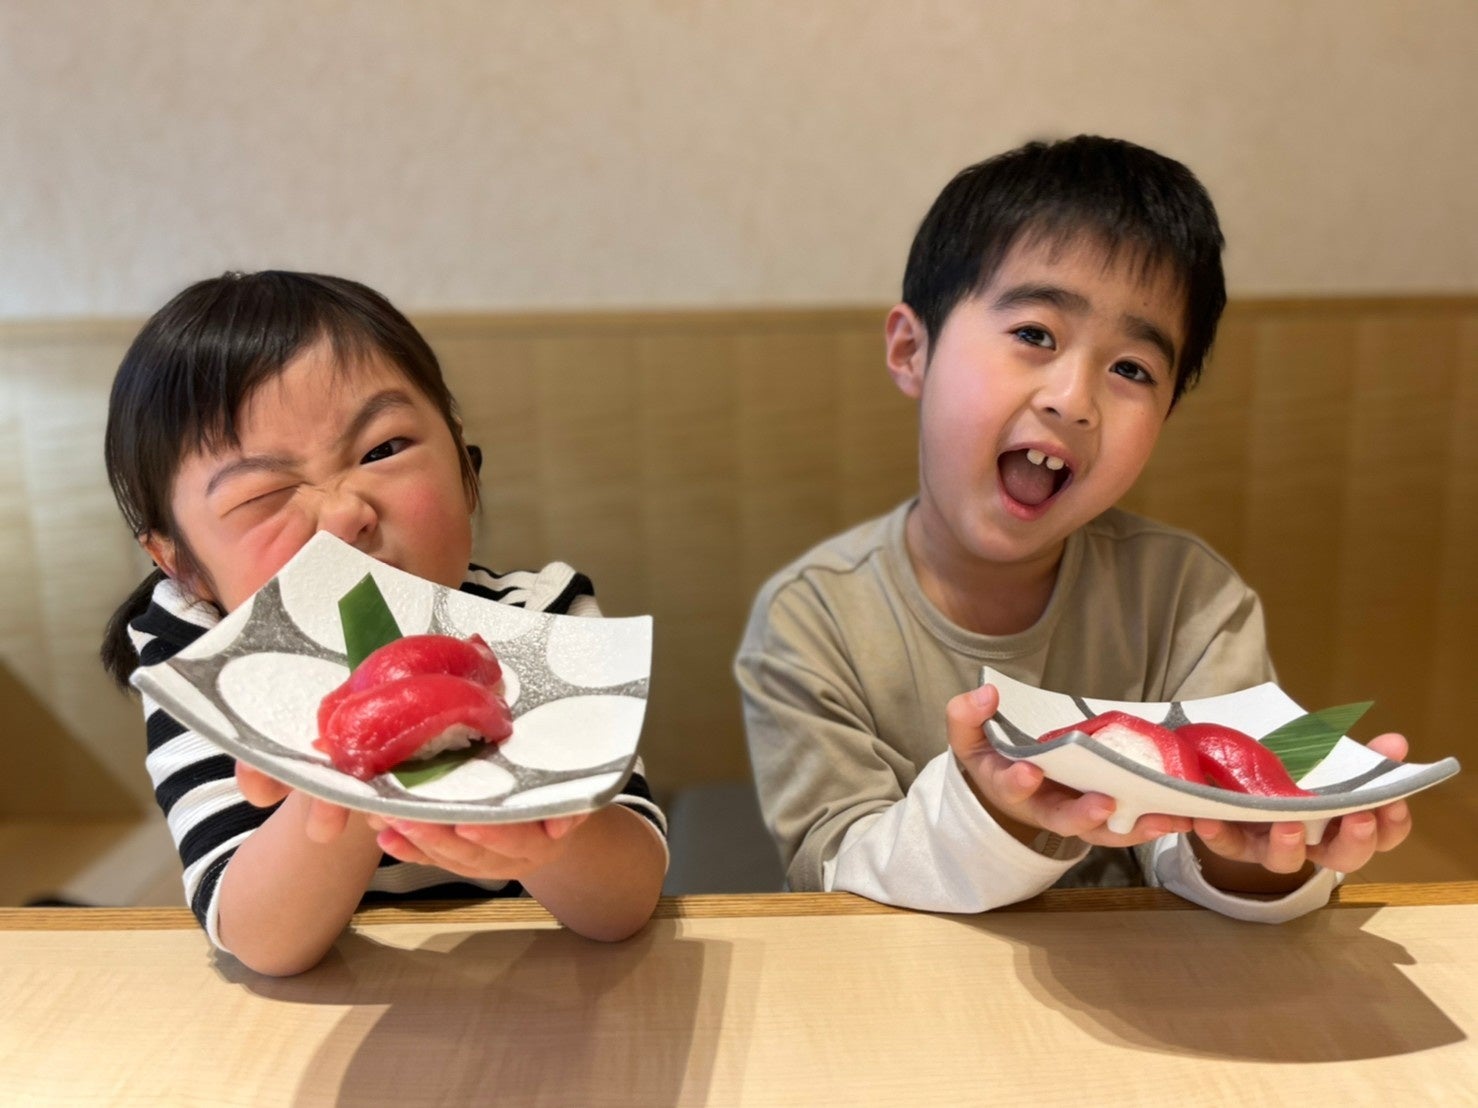 【金沢回転寿司 輝らり】小学生以下の子どもに豊洲直送の本まぐろ1皿を100円で3月25日より提供開始。寿司を通して食育活動